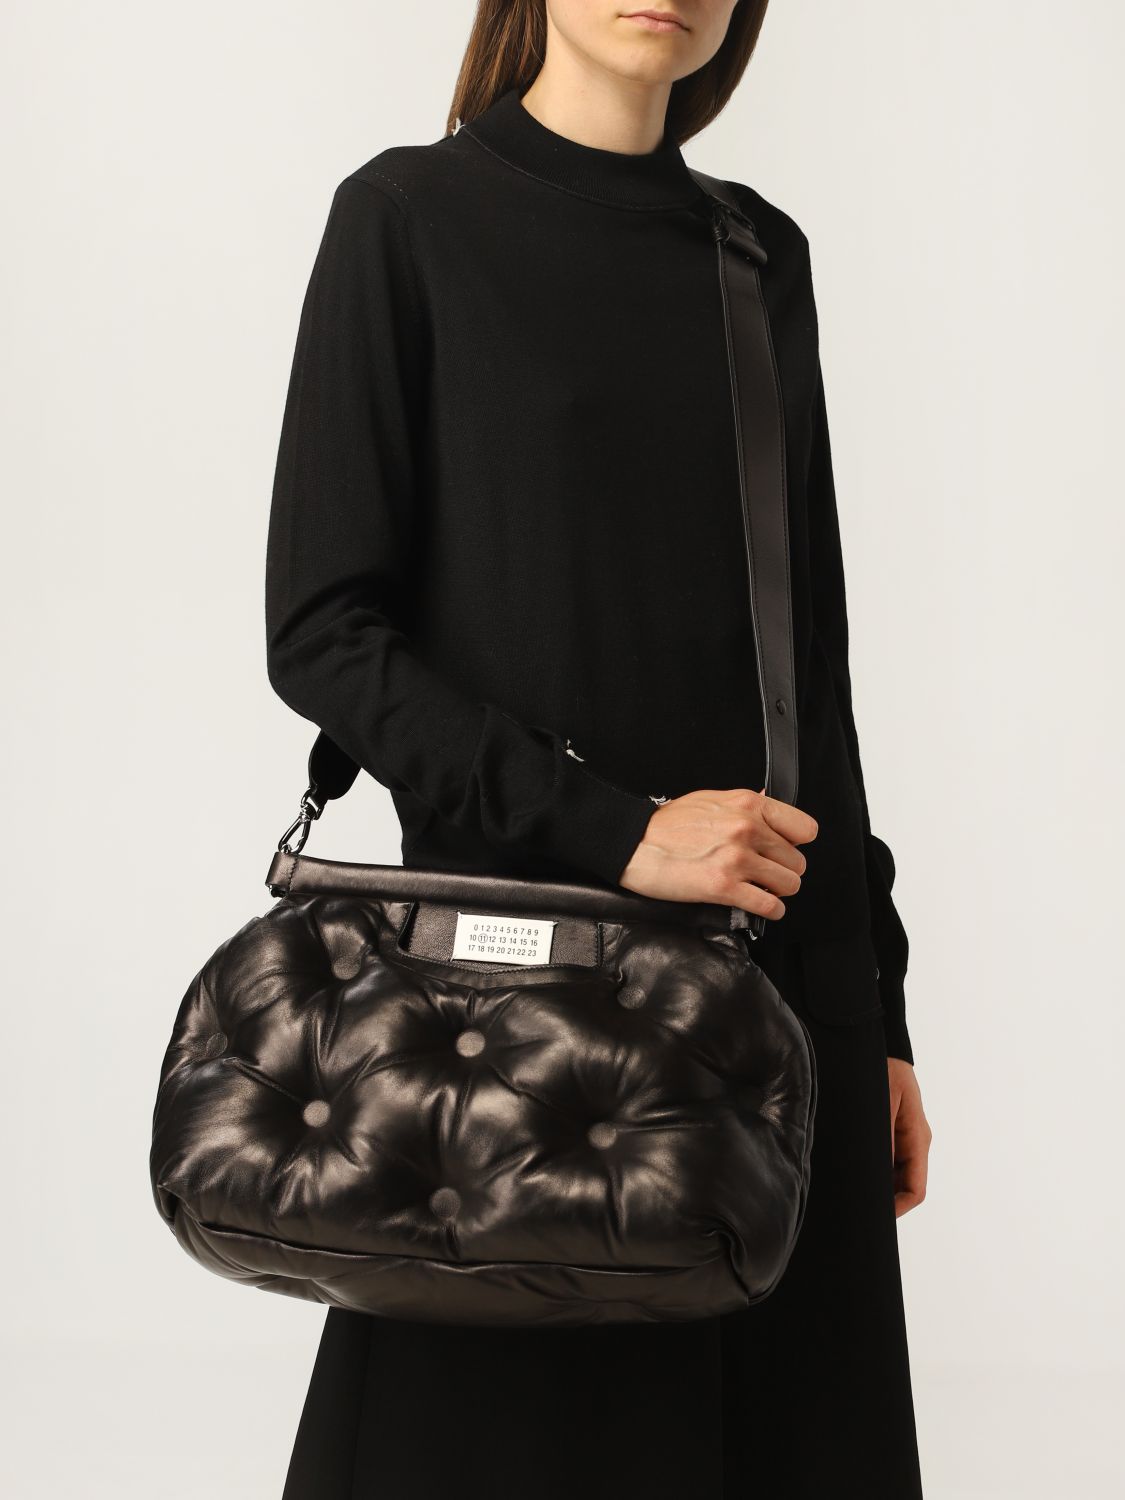 MAISON MARGIELA: Glam Slam padded leather bag - Black | Maison